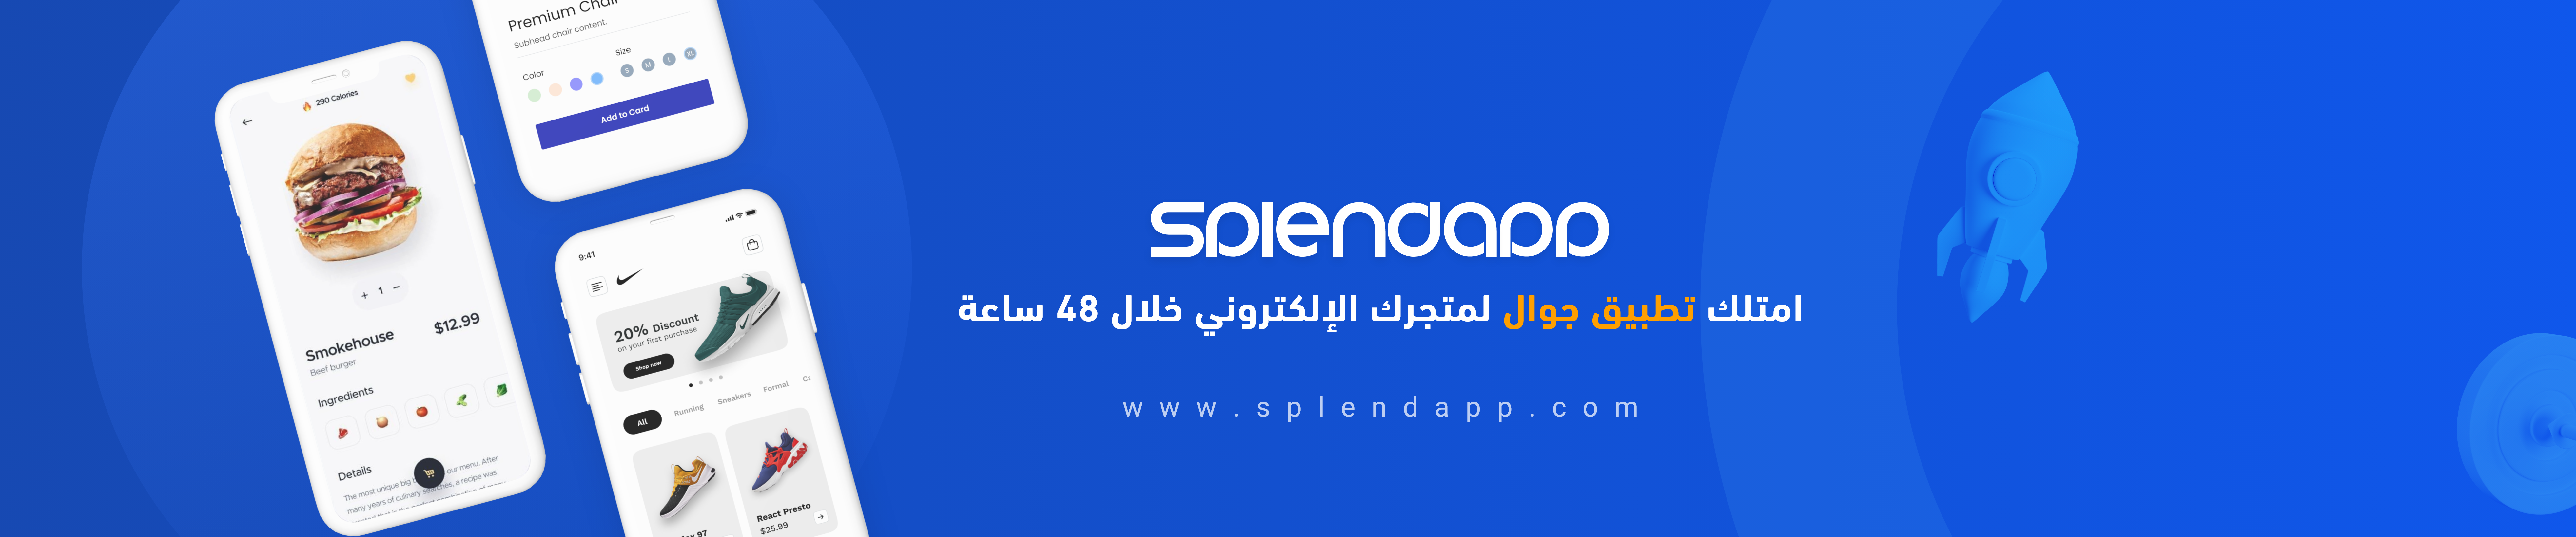 Splend App's profile banner